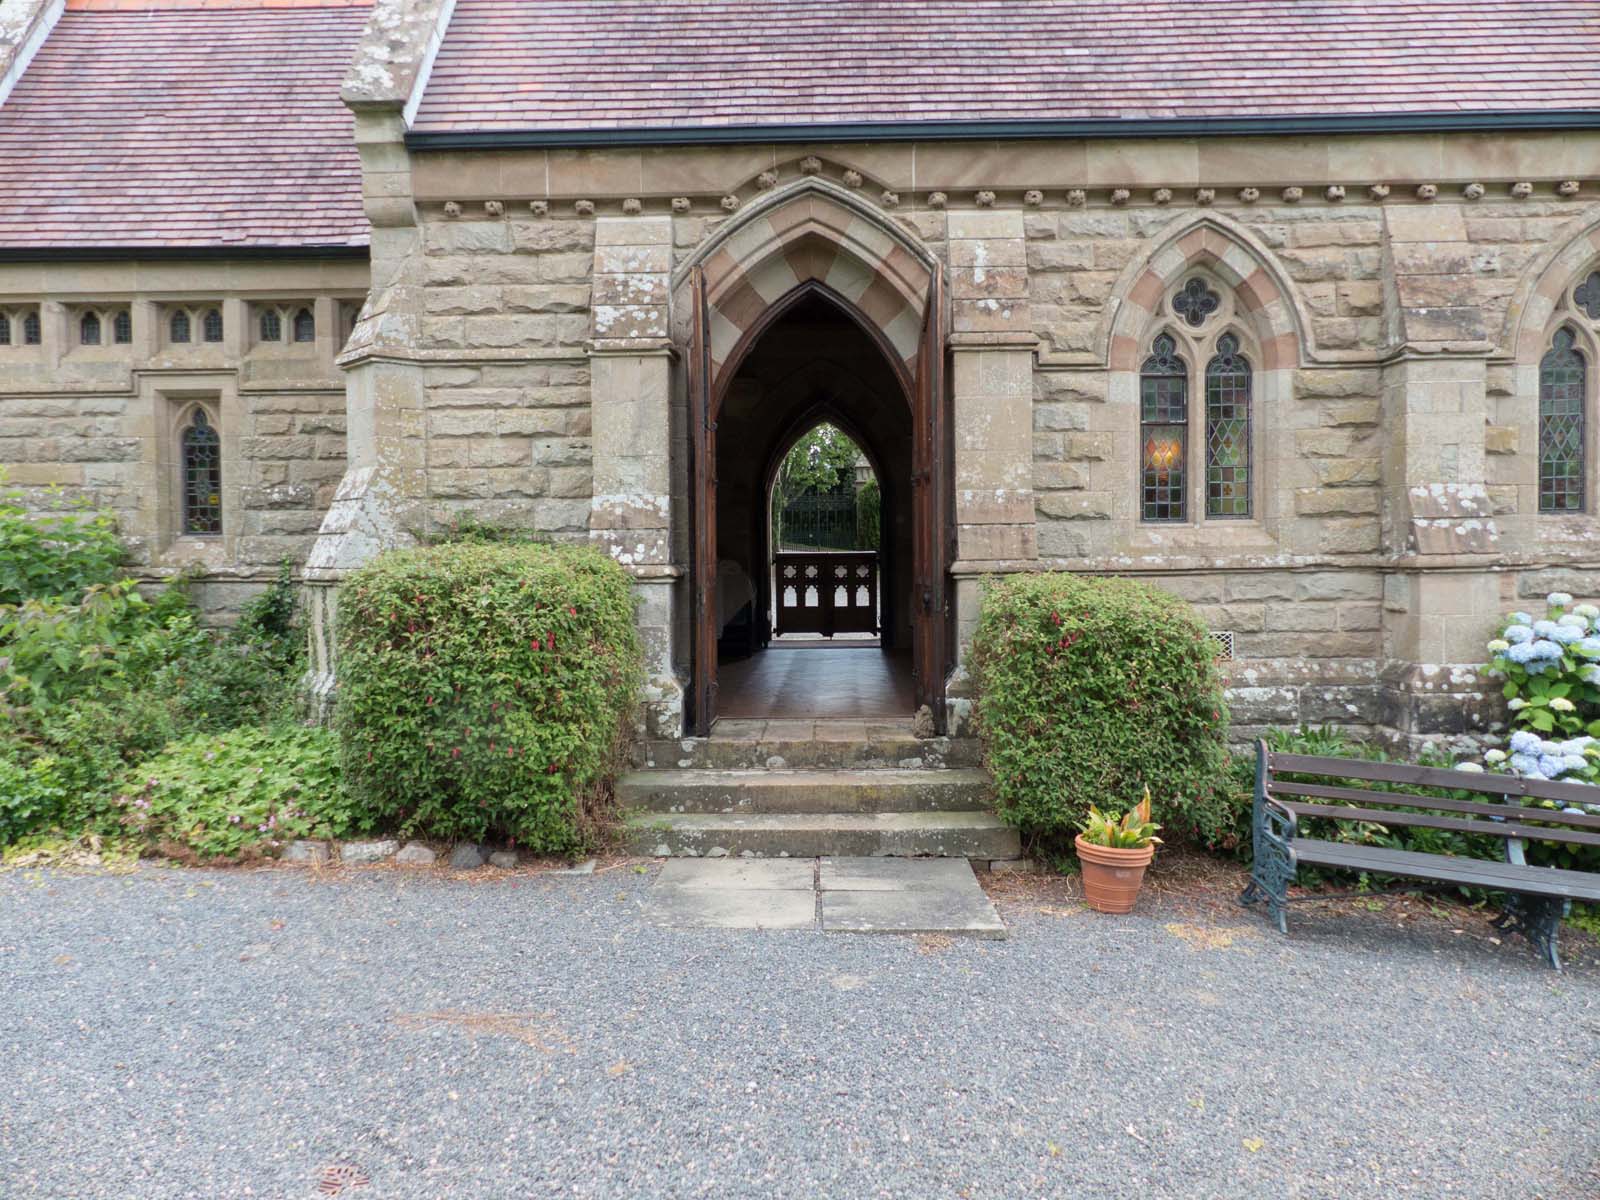 South door of Malvern Wells cemetery chapel